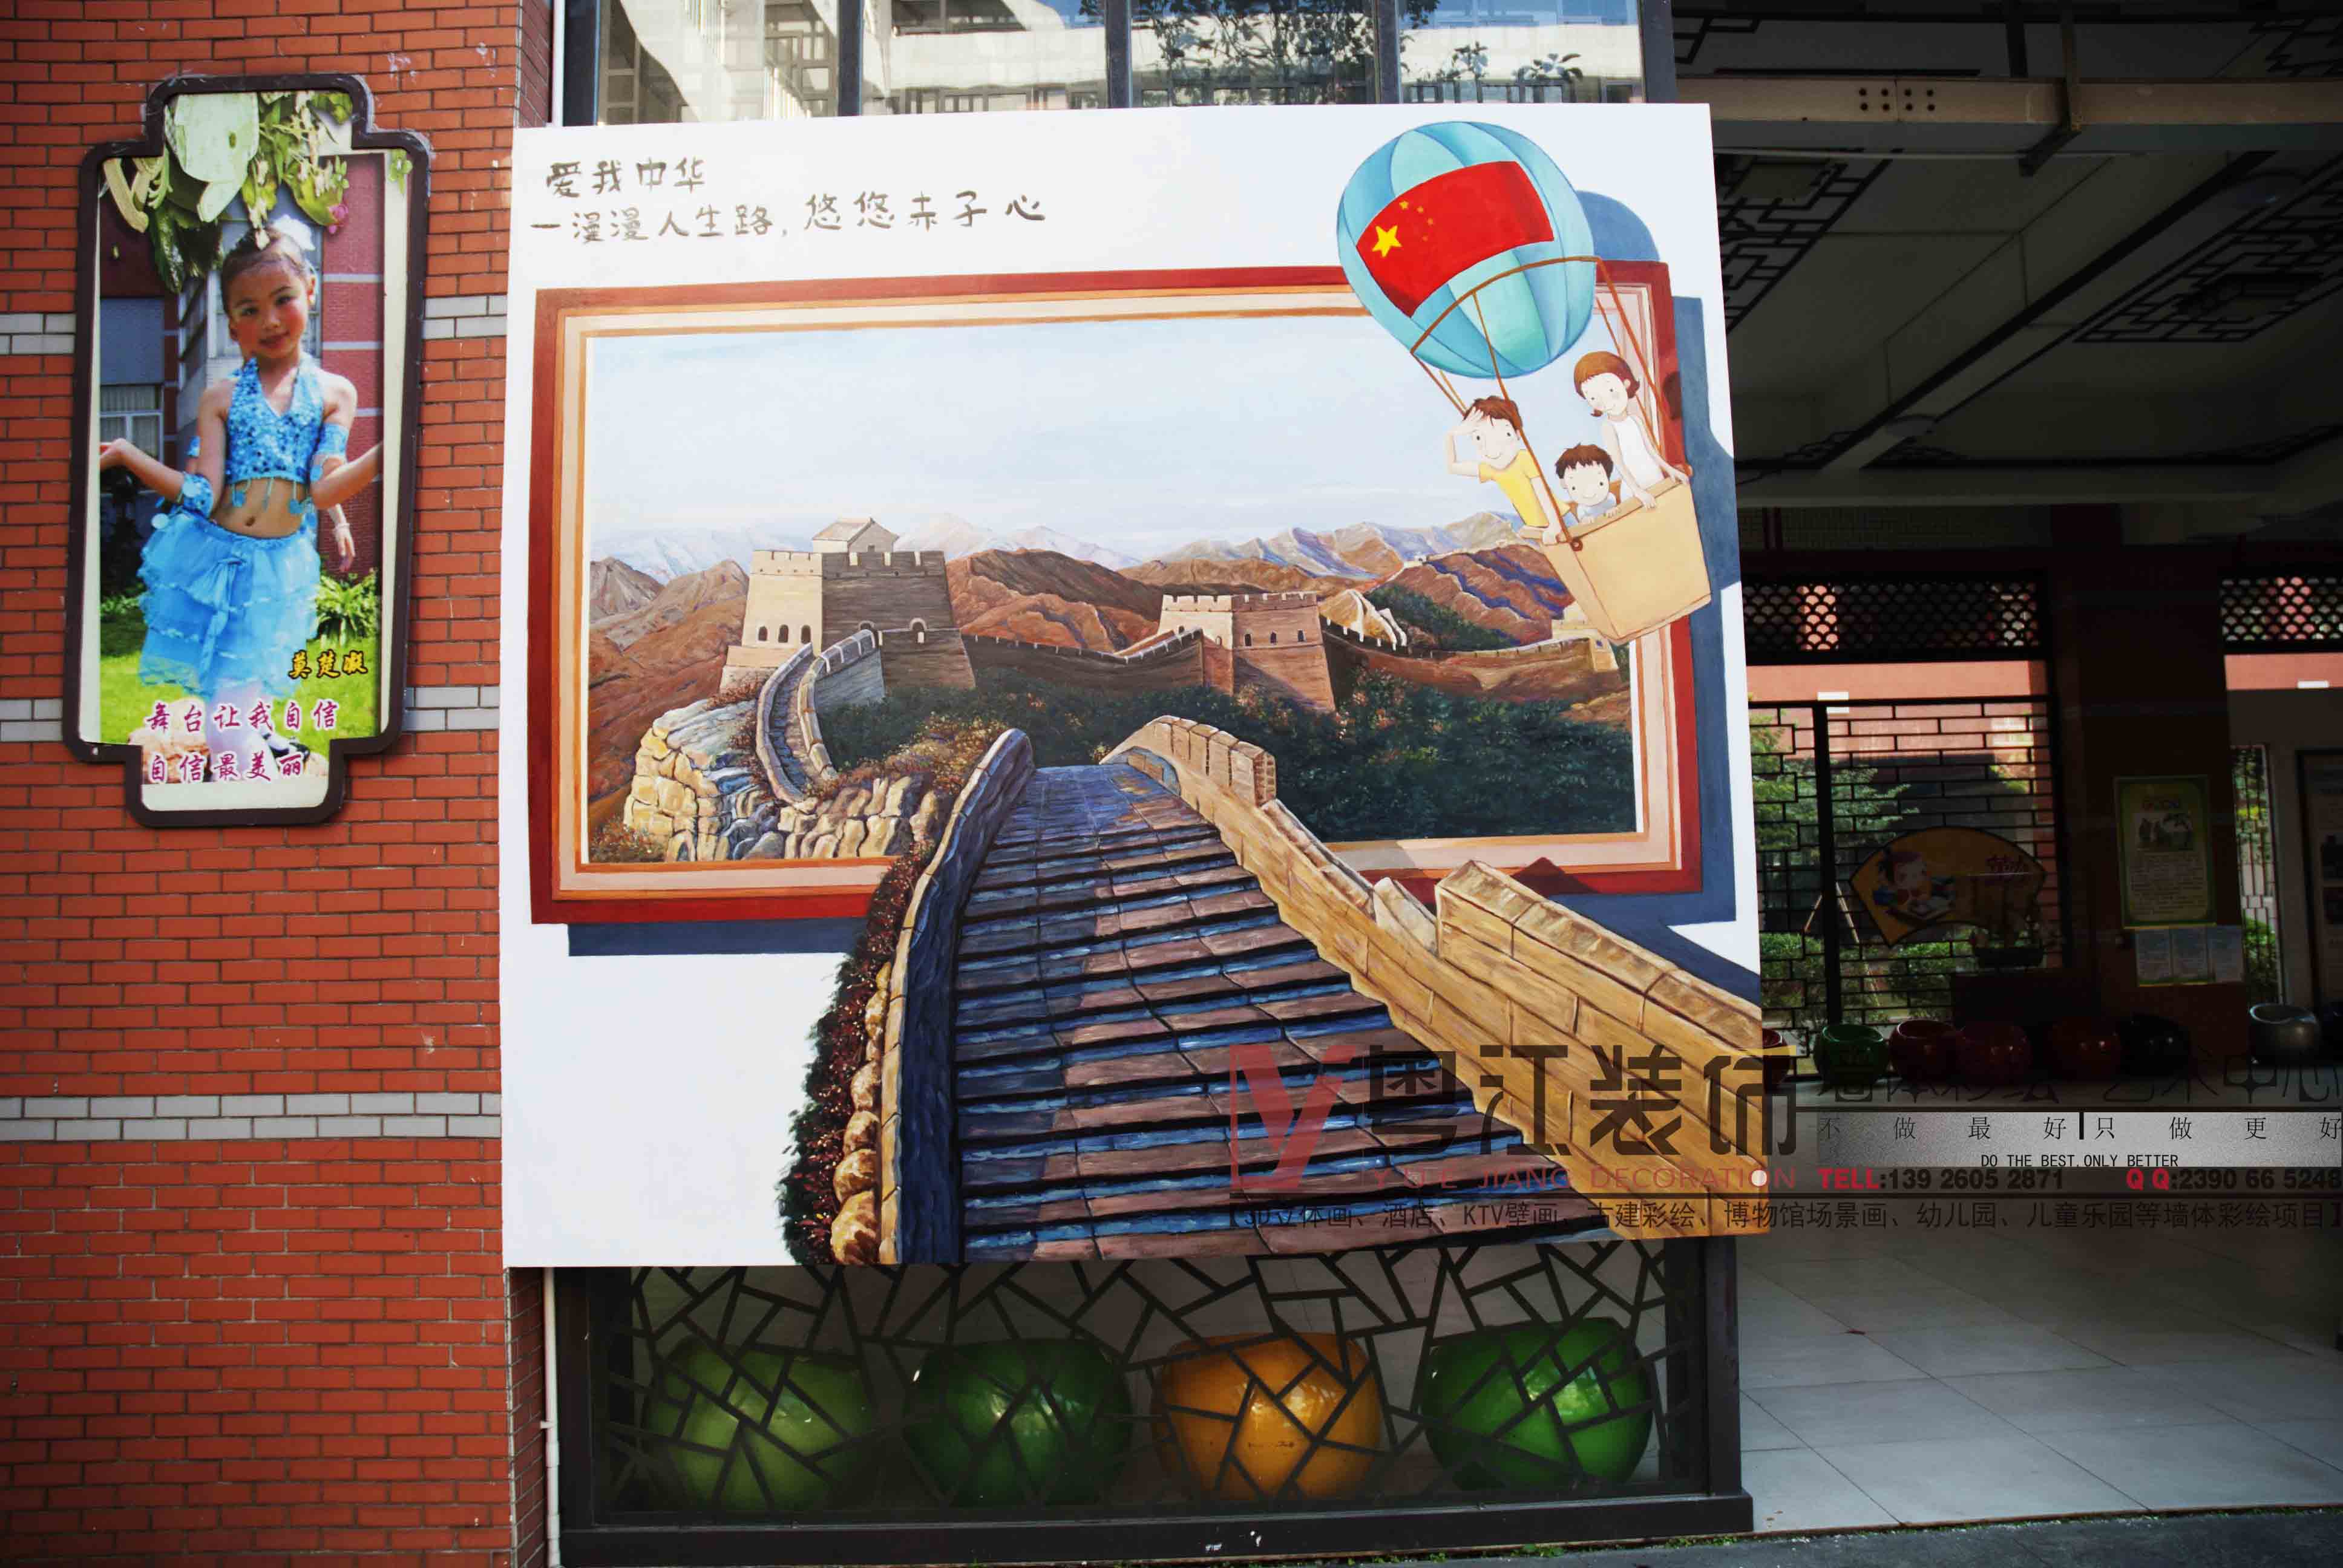 佛山如何用墙体彩绘打造独特的中小学校园文化